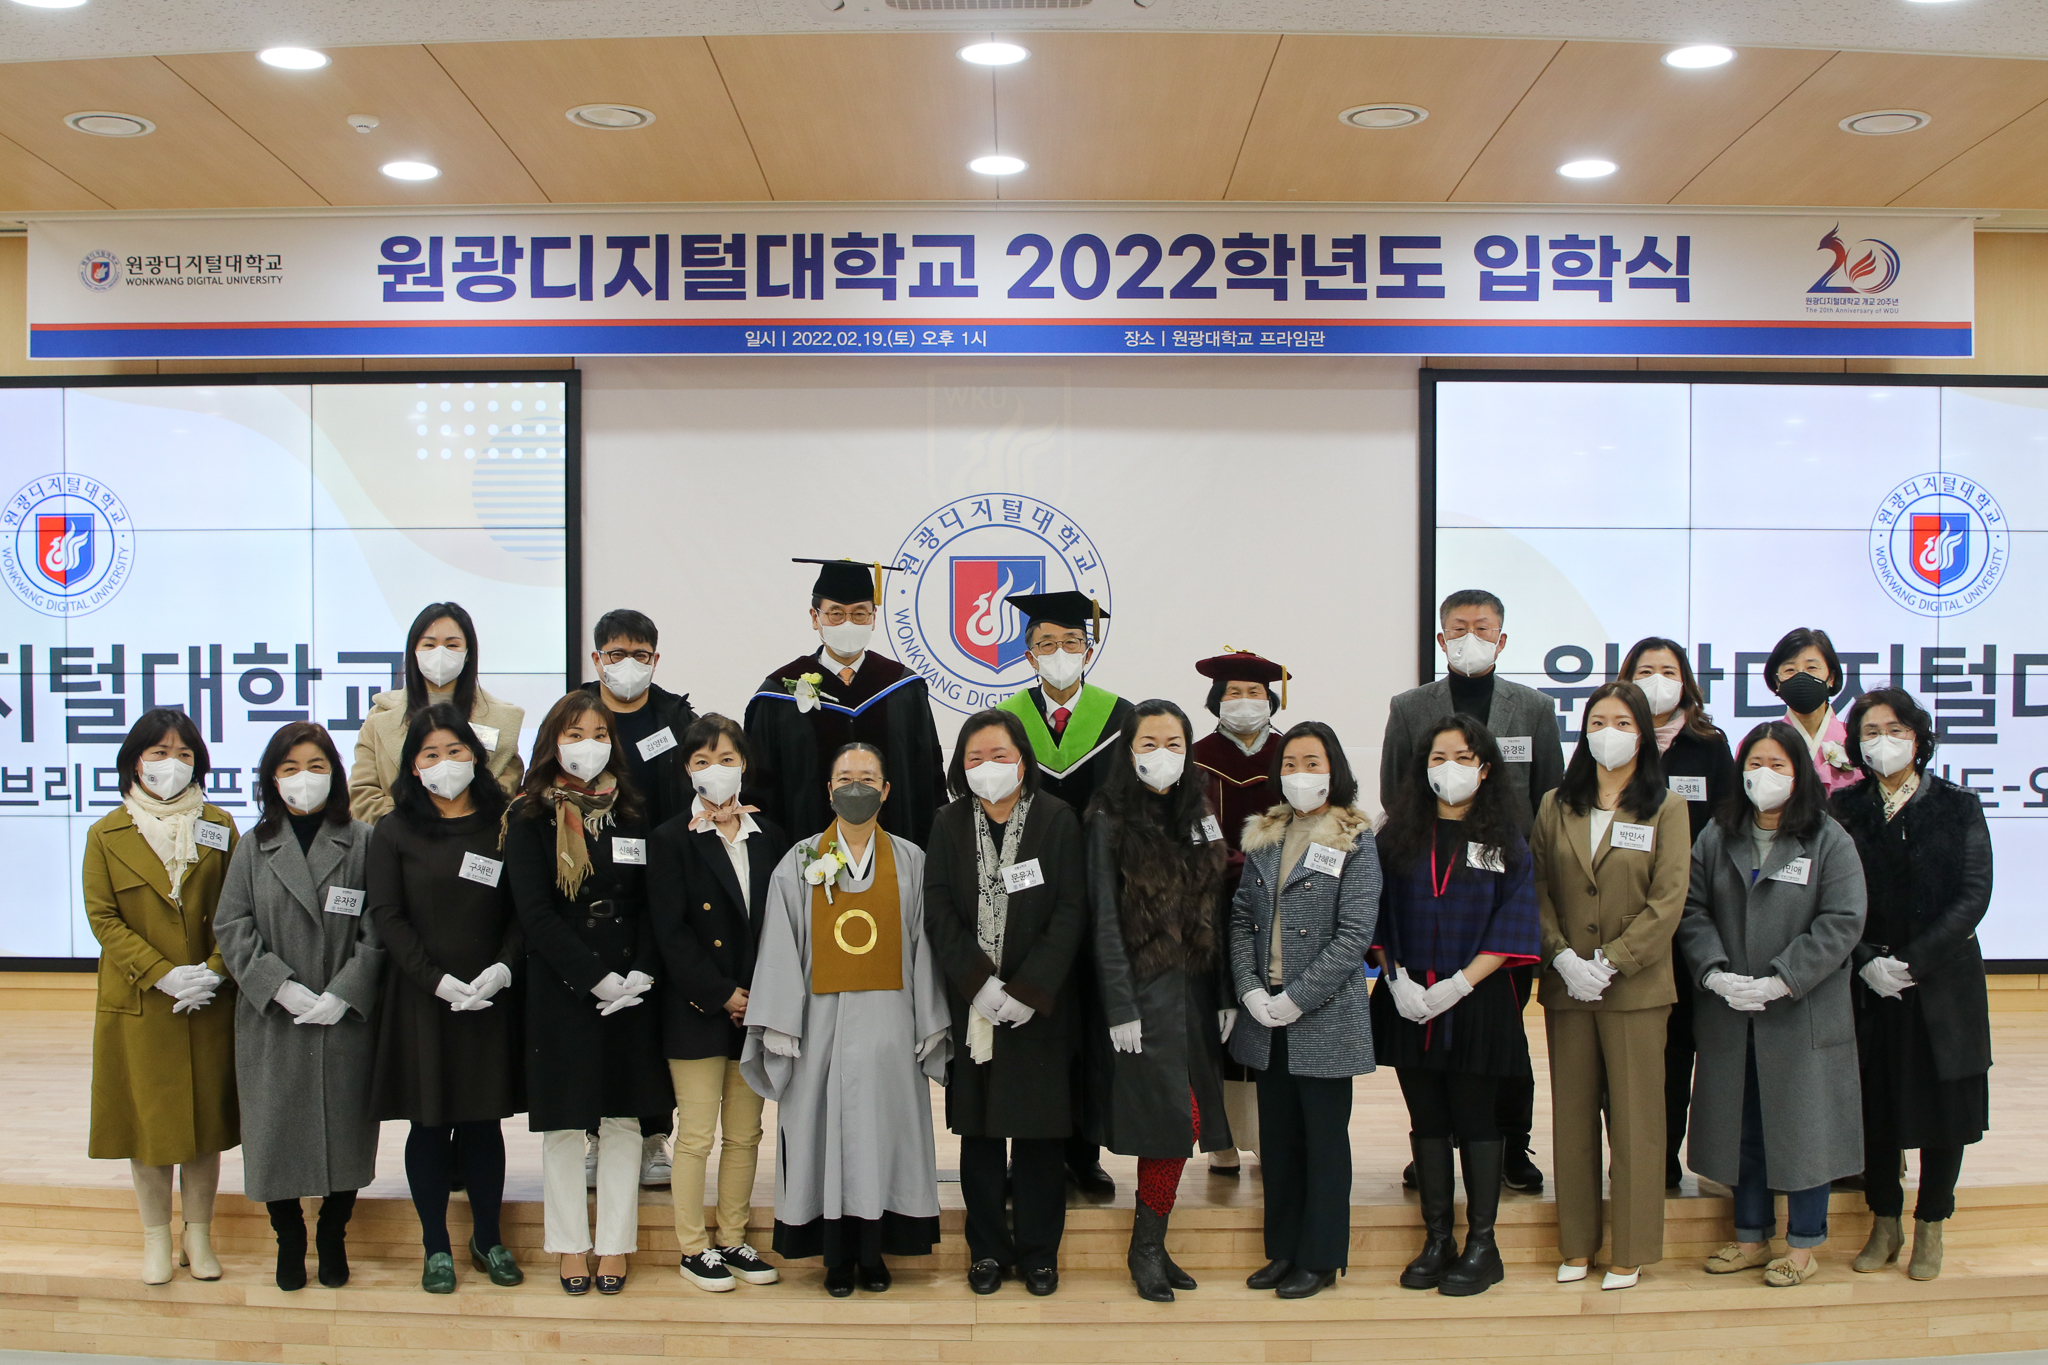 원광디지털대학교 2022학년도 입학식 기념사진